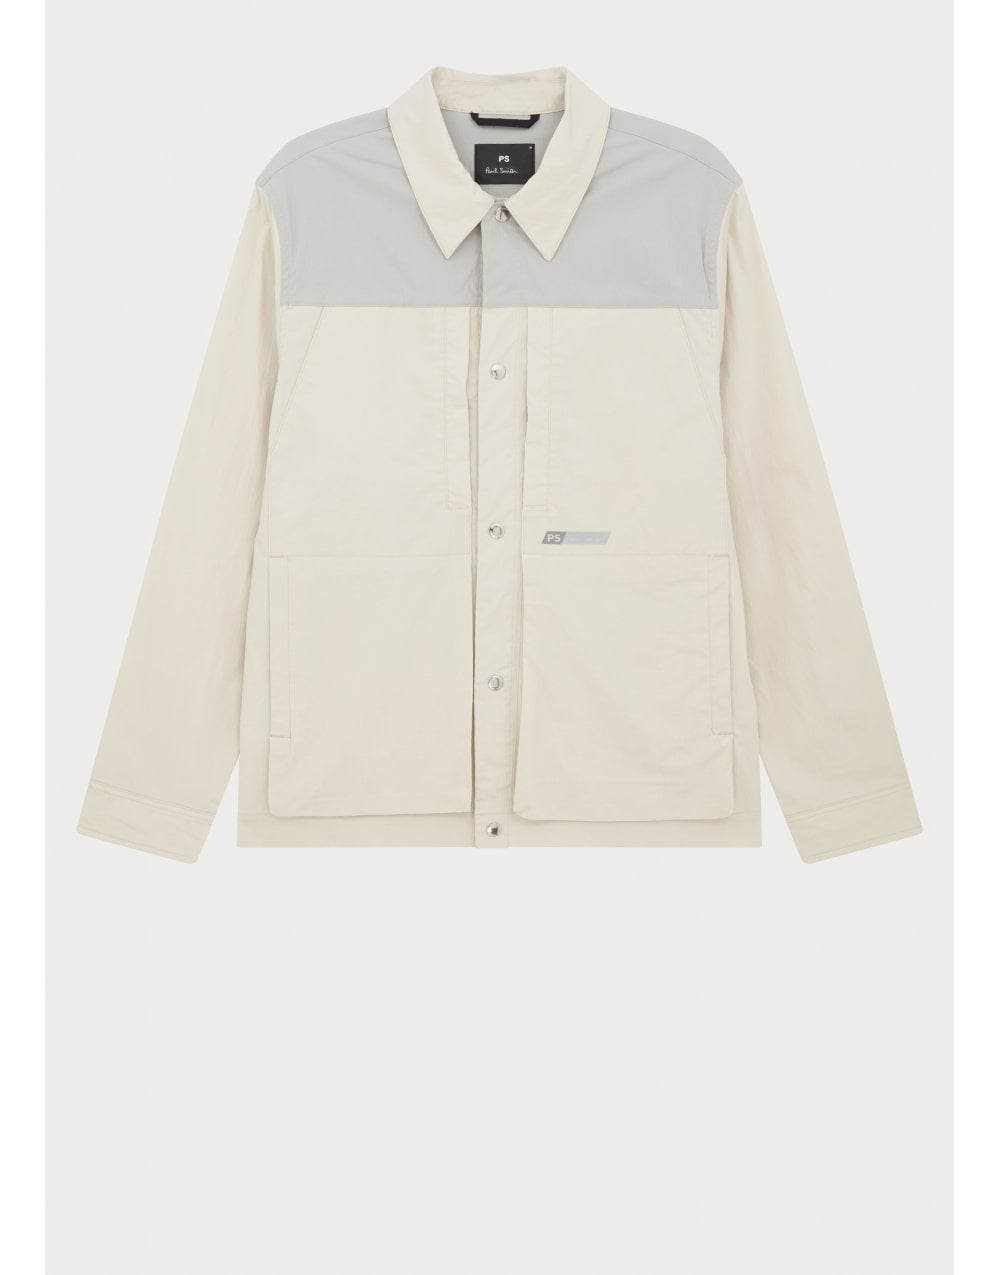 Paul Smith Paul Smith Nylon Mix Overshirt Style Jacket Col: 71 Grey Beige, Size: